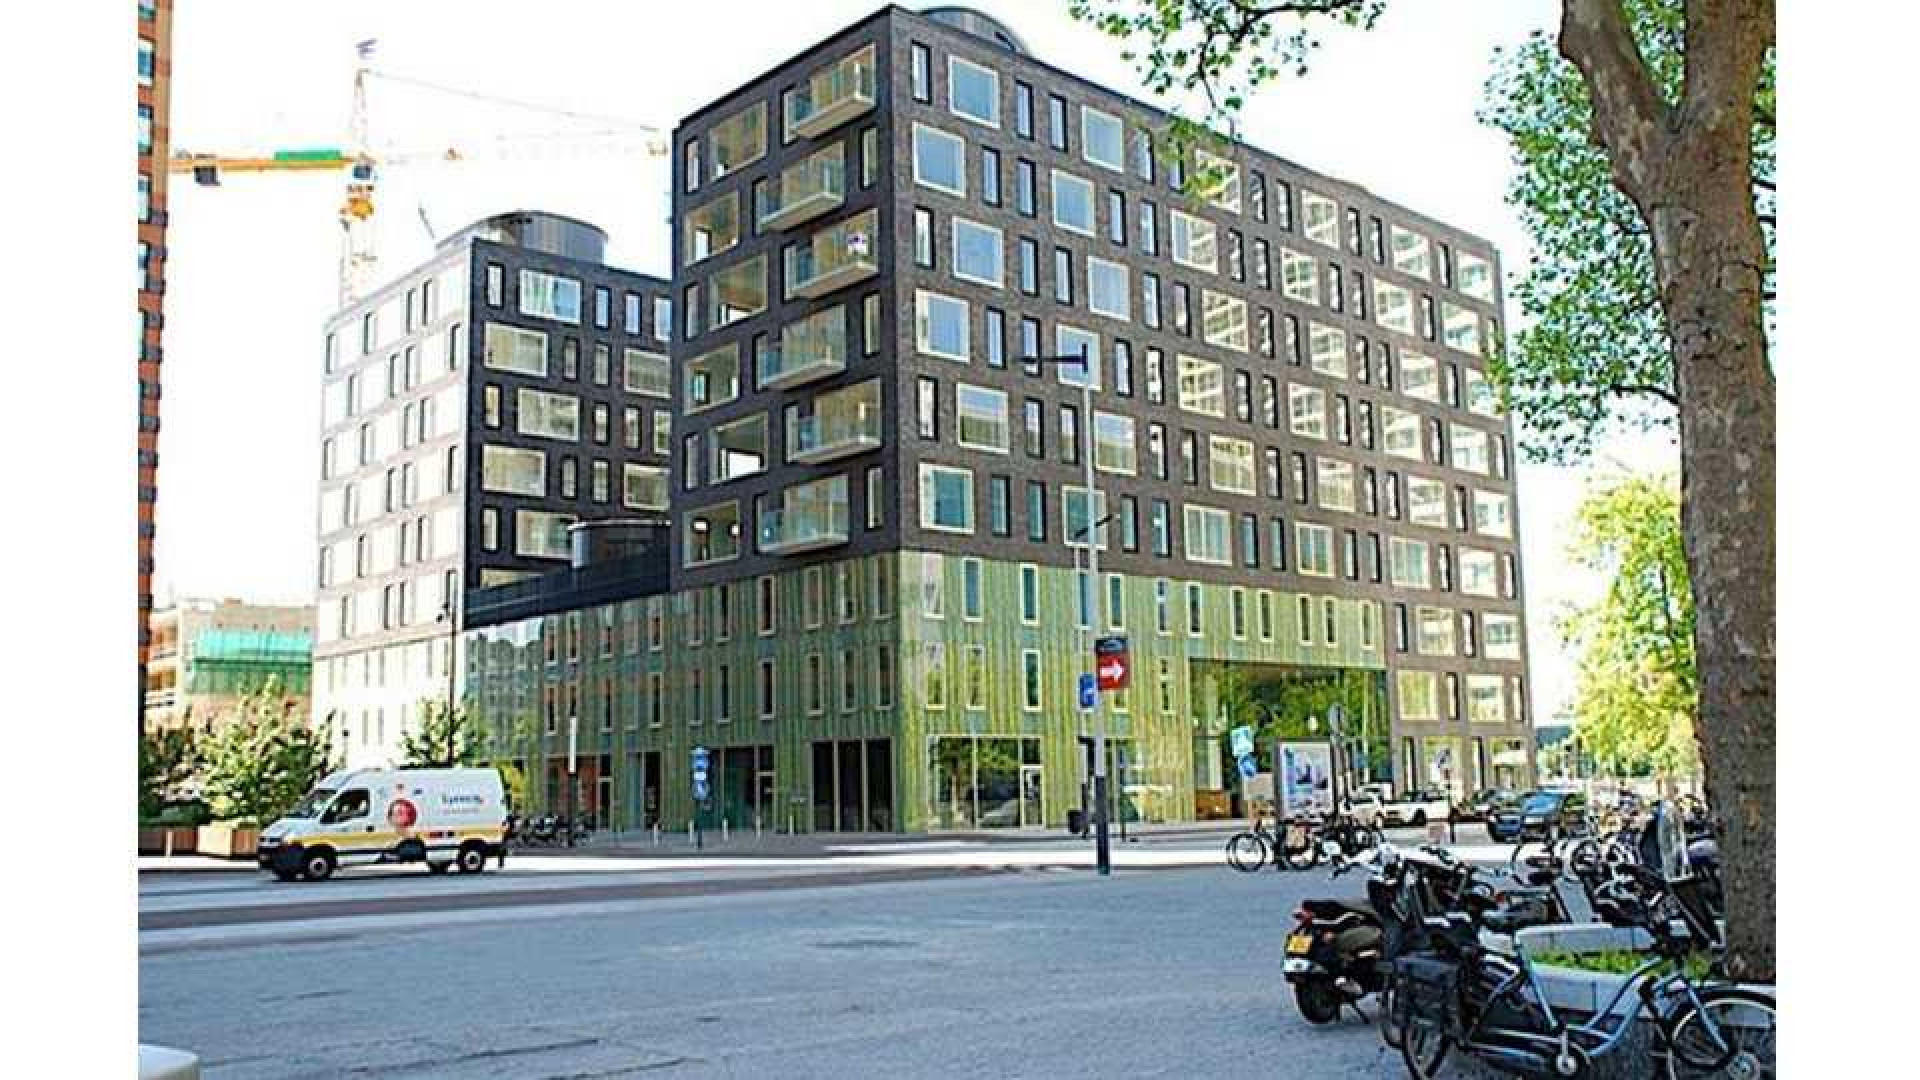 Ajax voetballer Joel Veltman huurt zeer luxe appartement aan de Zuid As in Amsterdam. Zie foto's 1